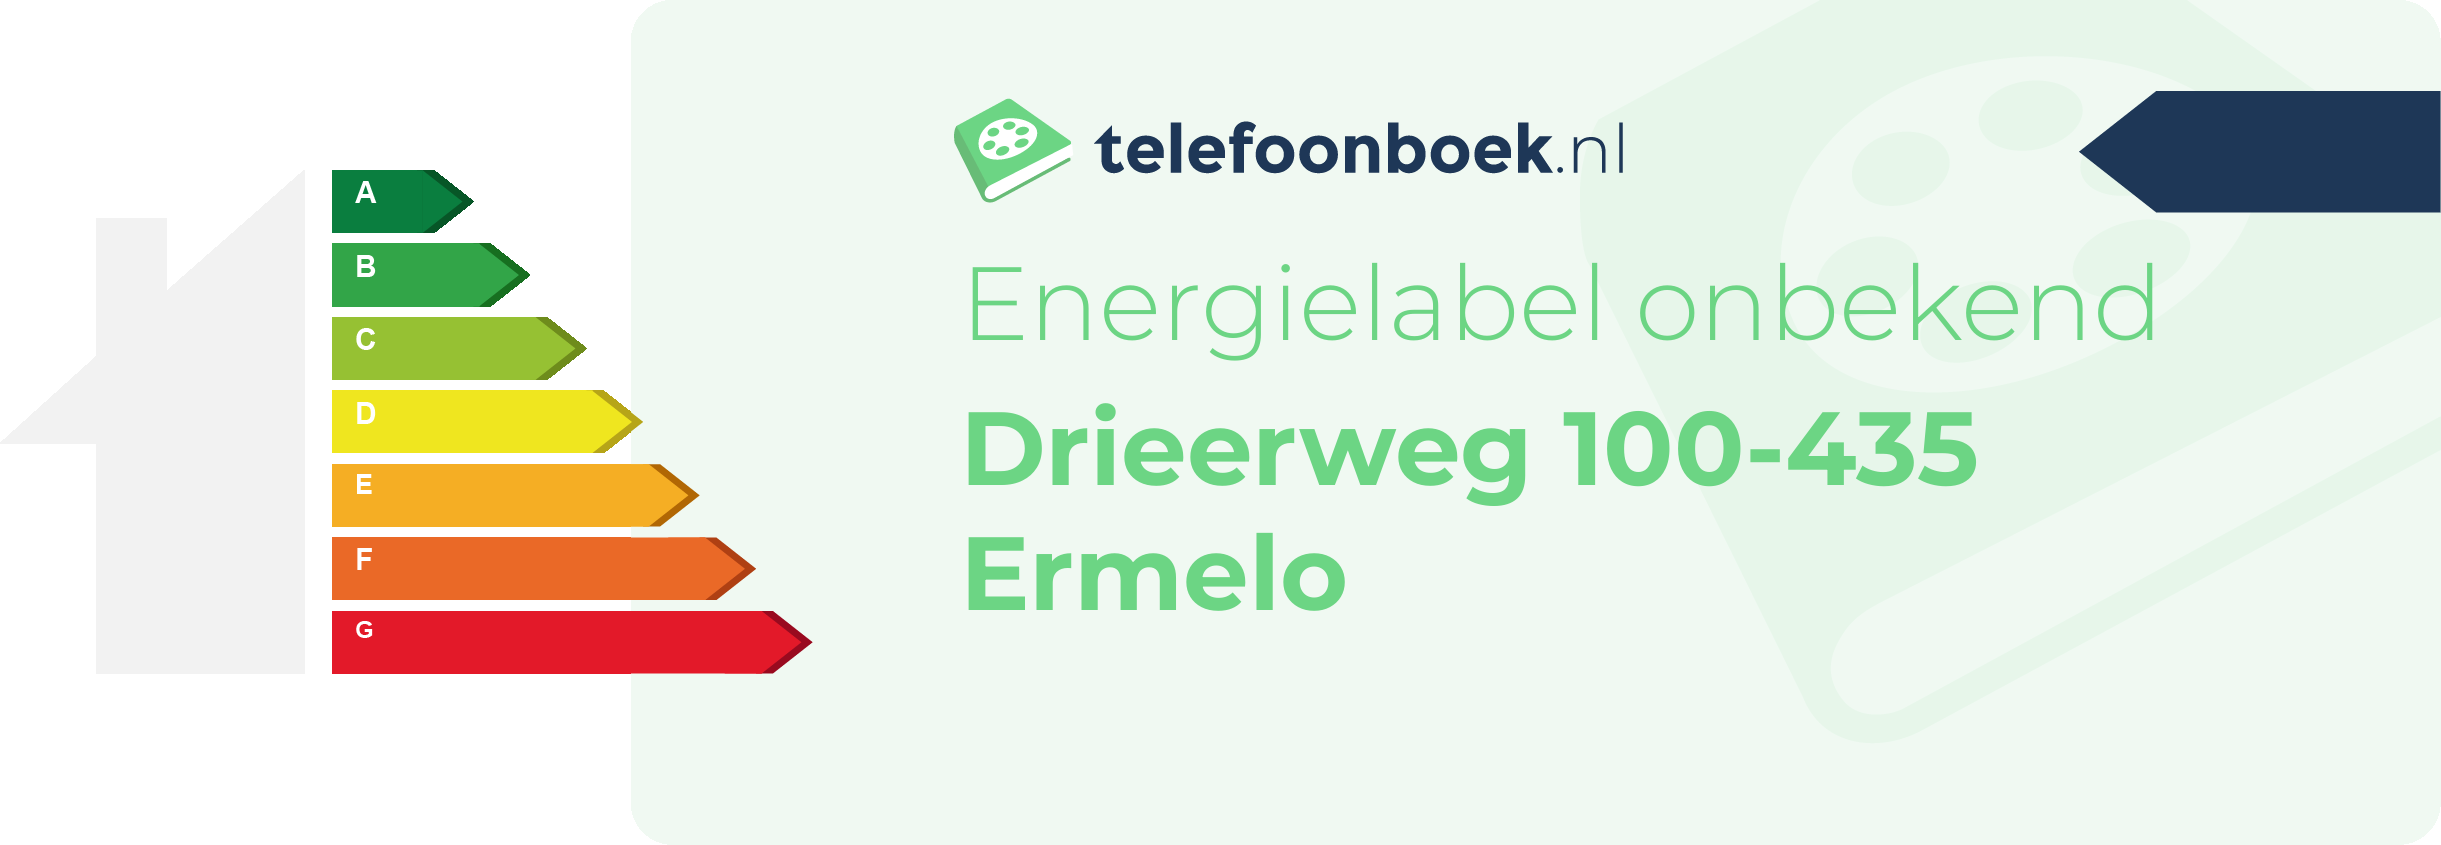 Energielabel Drieerweg 100-435 Ermelo